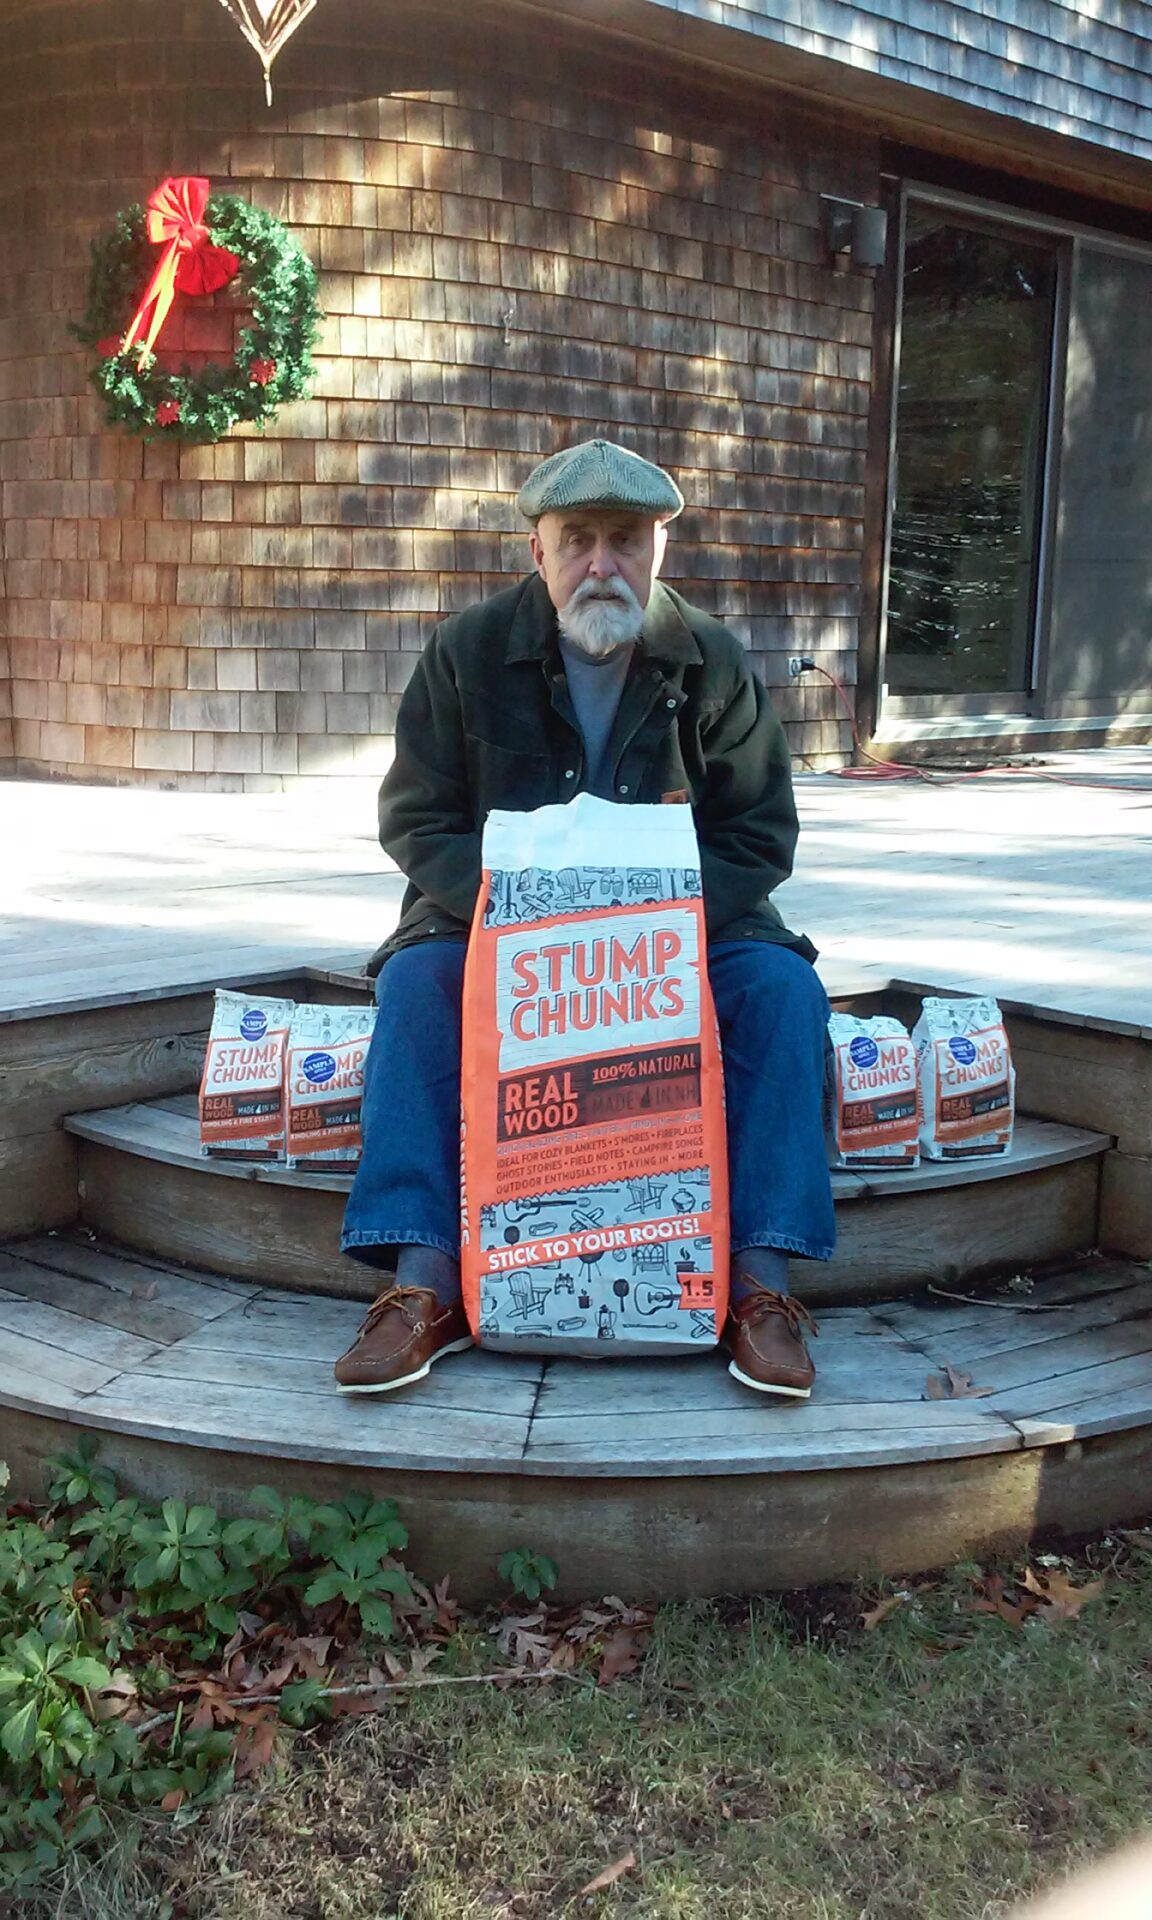 Stump Chunks – November Large Bag Contest Winner